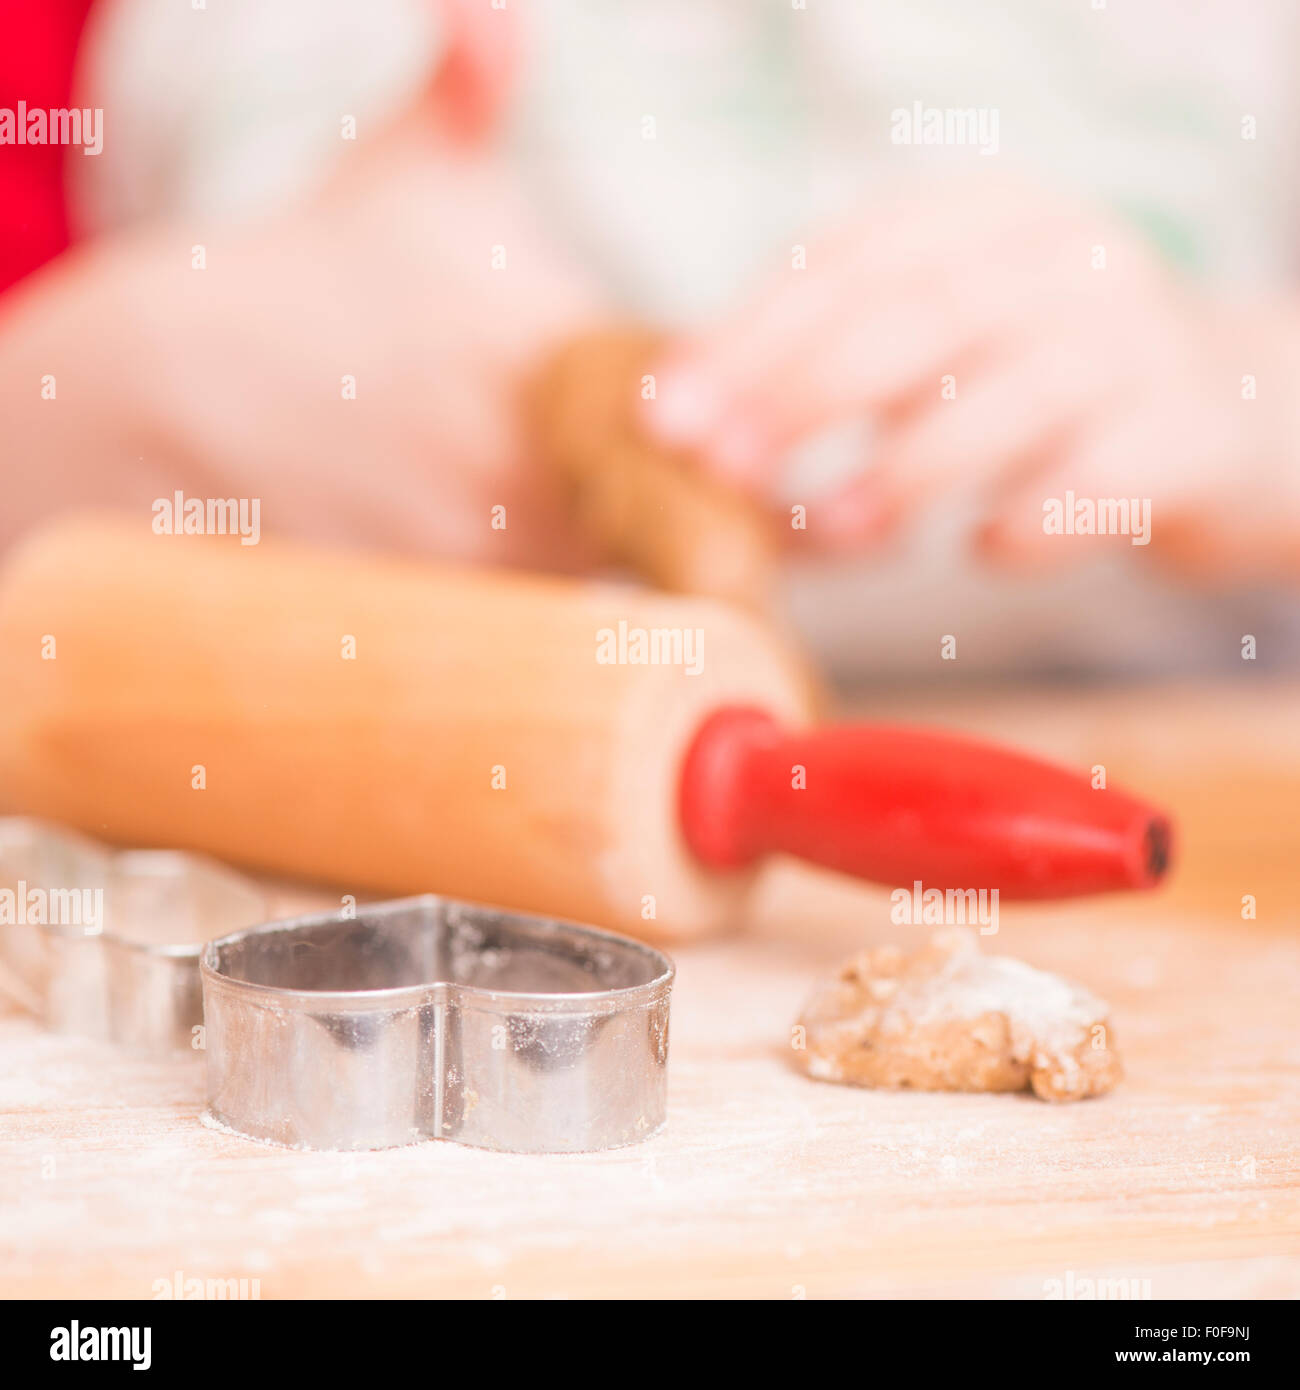 Ausstecher, Lebkuchen-Cookie-Teig und Nudelholz auf Holzbrett. Junges Mädchen im Hintergrund. Stockfoto